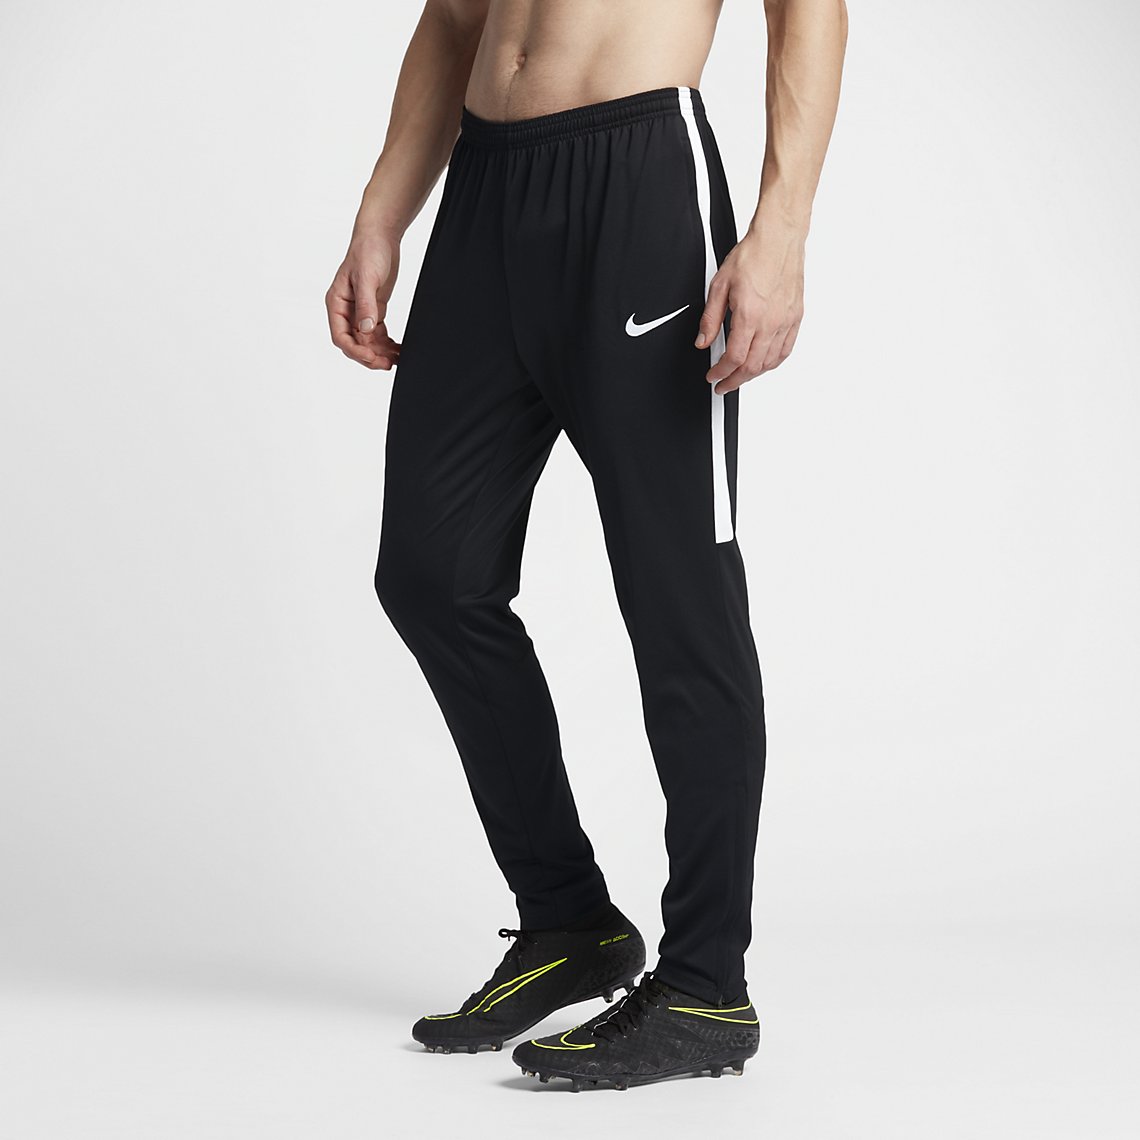 supermarkt Rechtzetten Kwijting Men's Dry Academy Soccer Pants